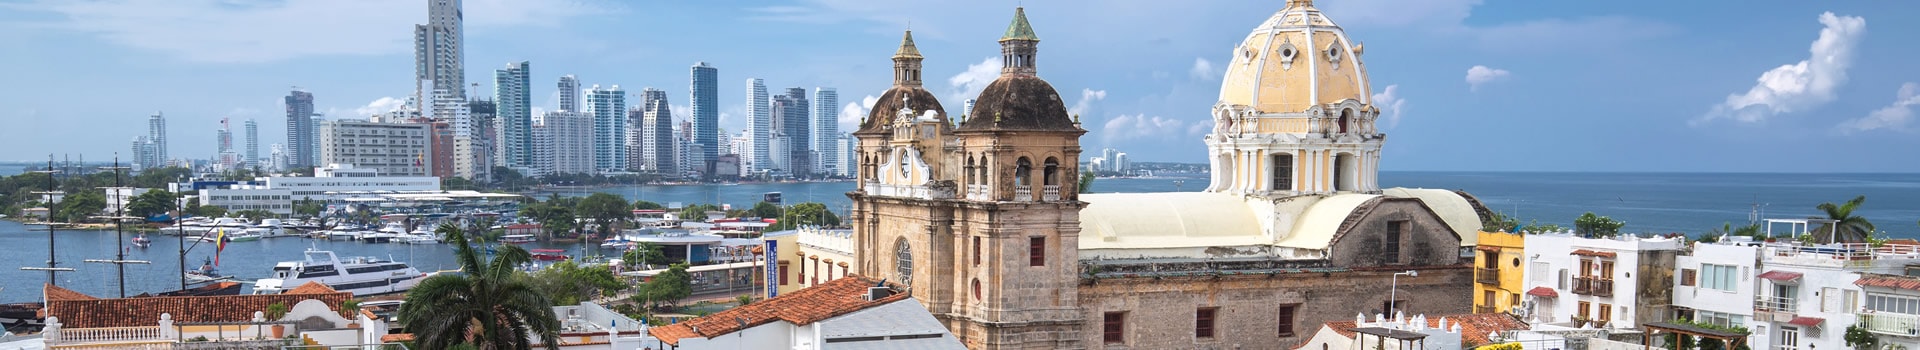 Guayaquil - Cartagena De Indias